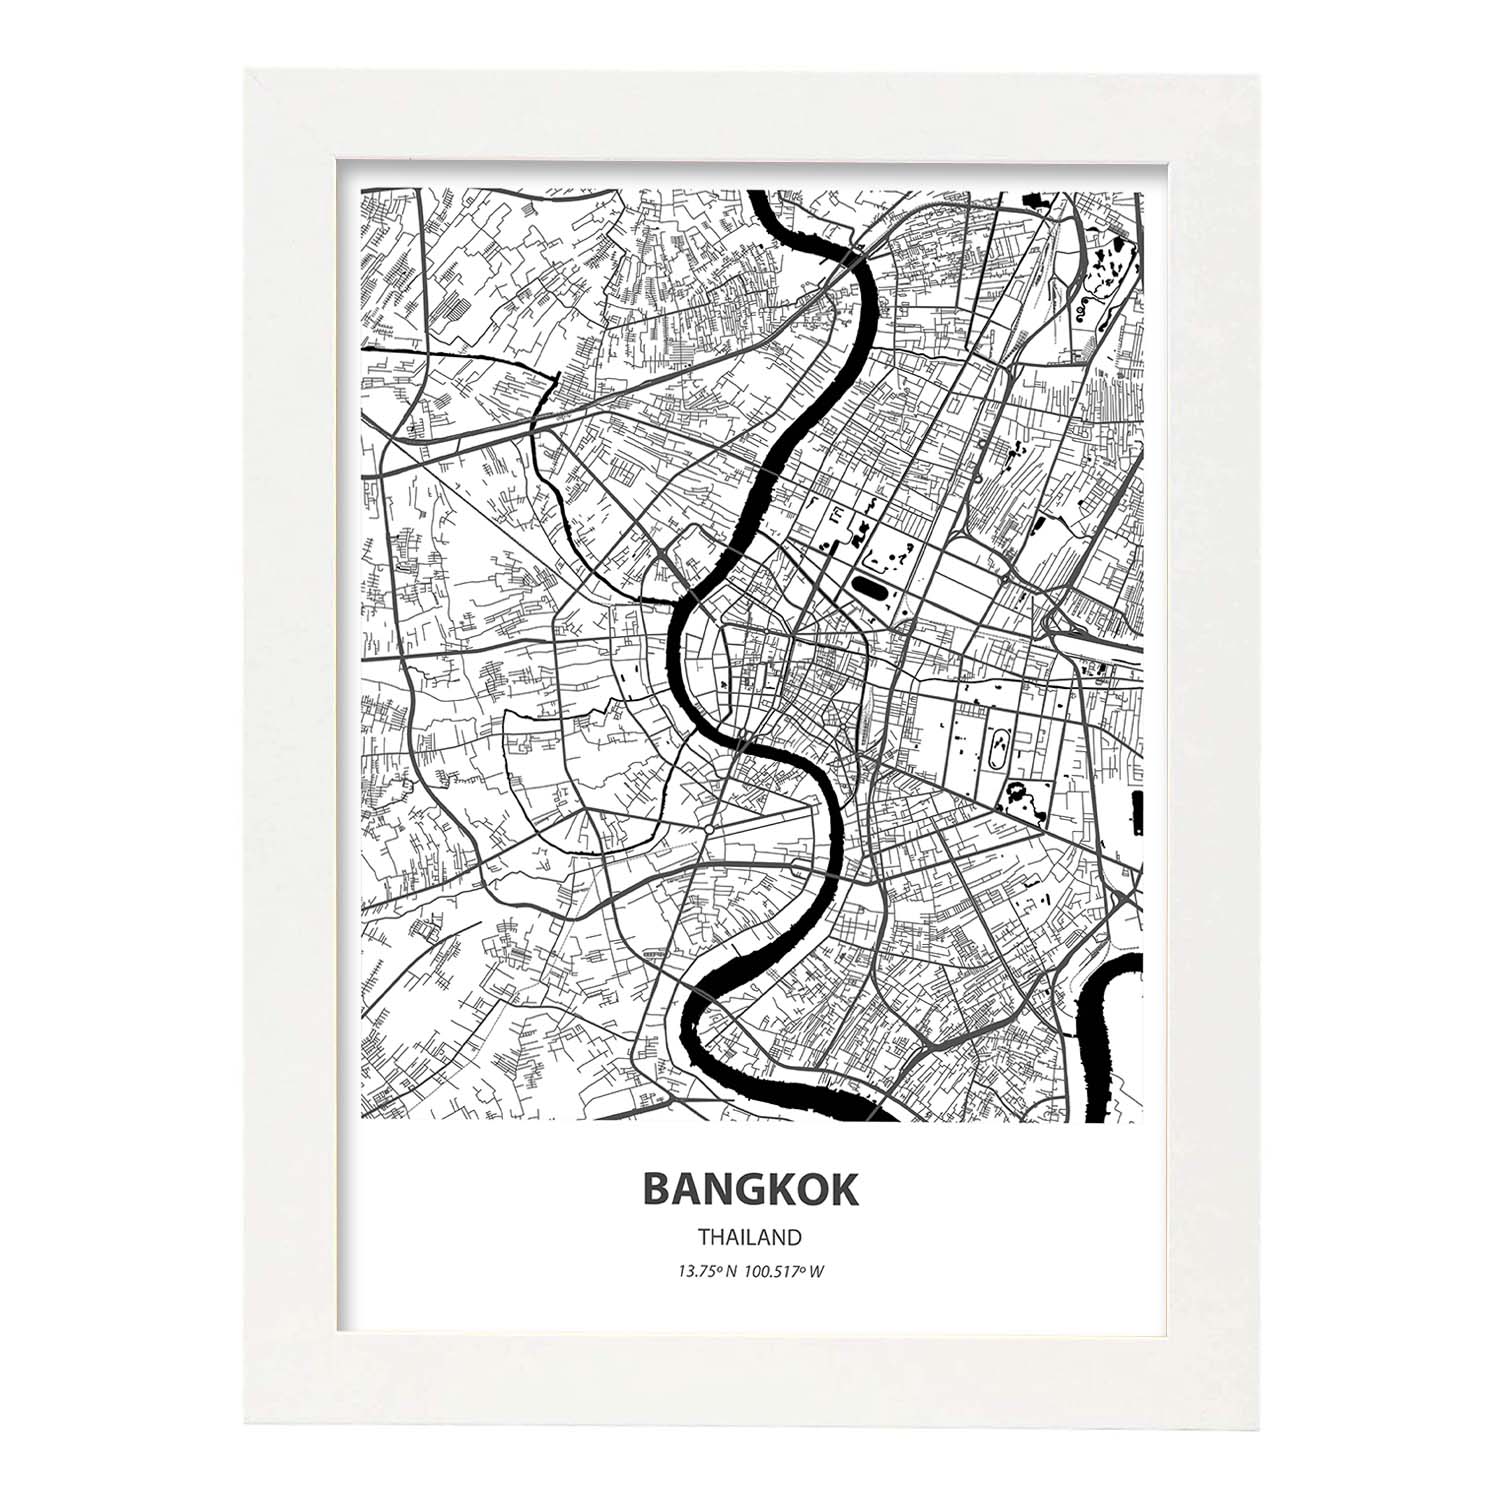 Poster con mapa de Bangkok - Tailandia. Láminas de ciudades de Asia con mares y ríos en color negro.-Artwork-Nacnic-A4-Marco Blanco-Nacnic Estudio SL